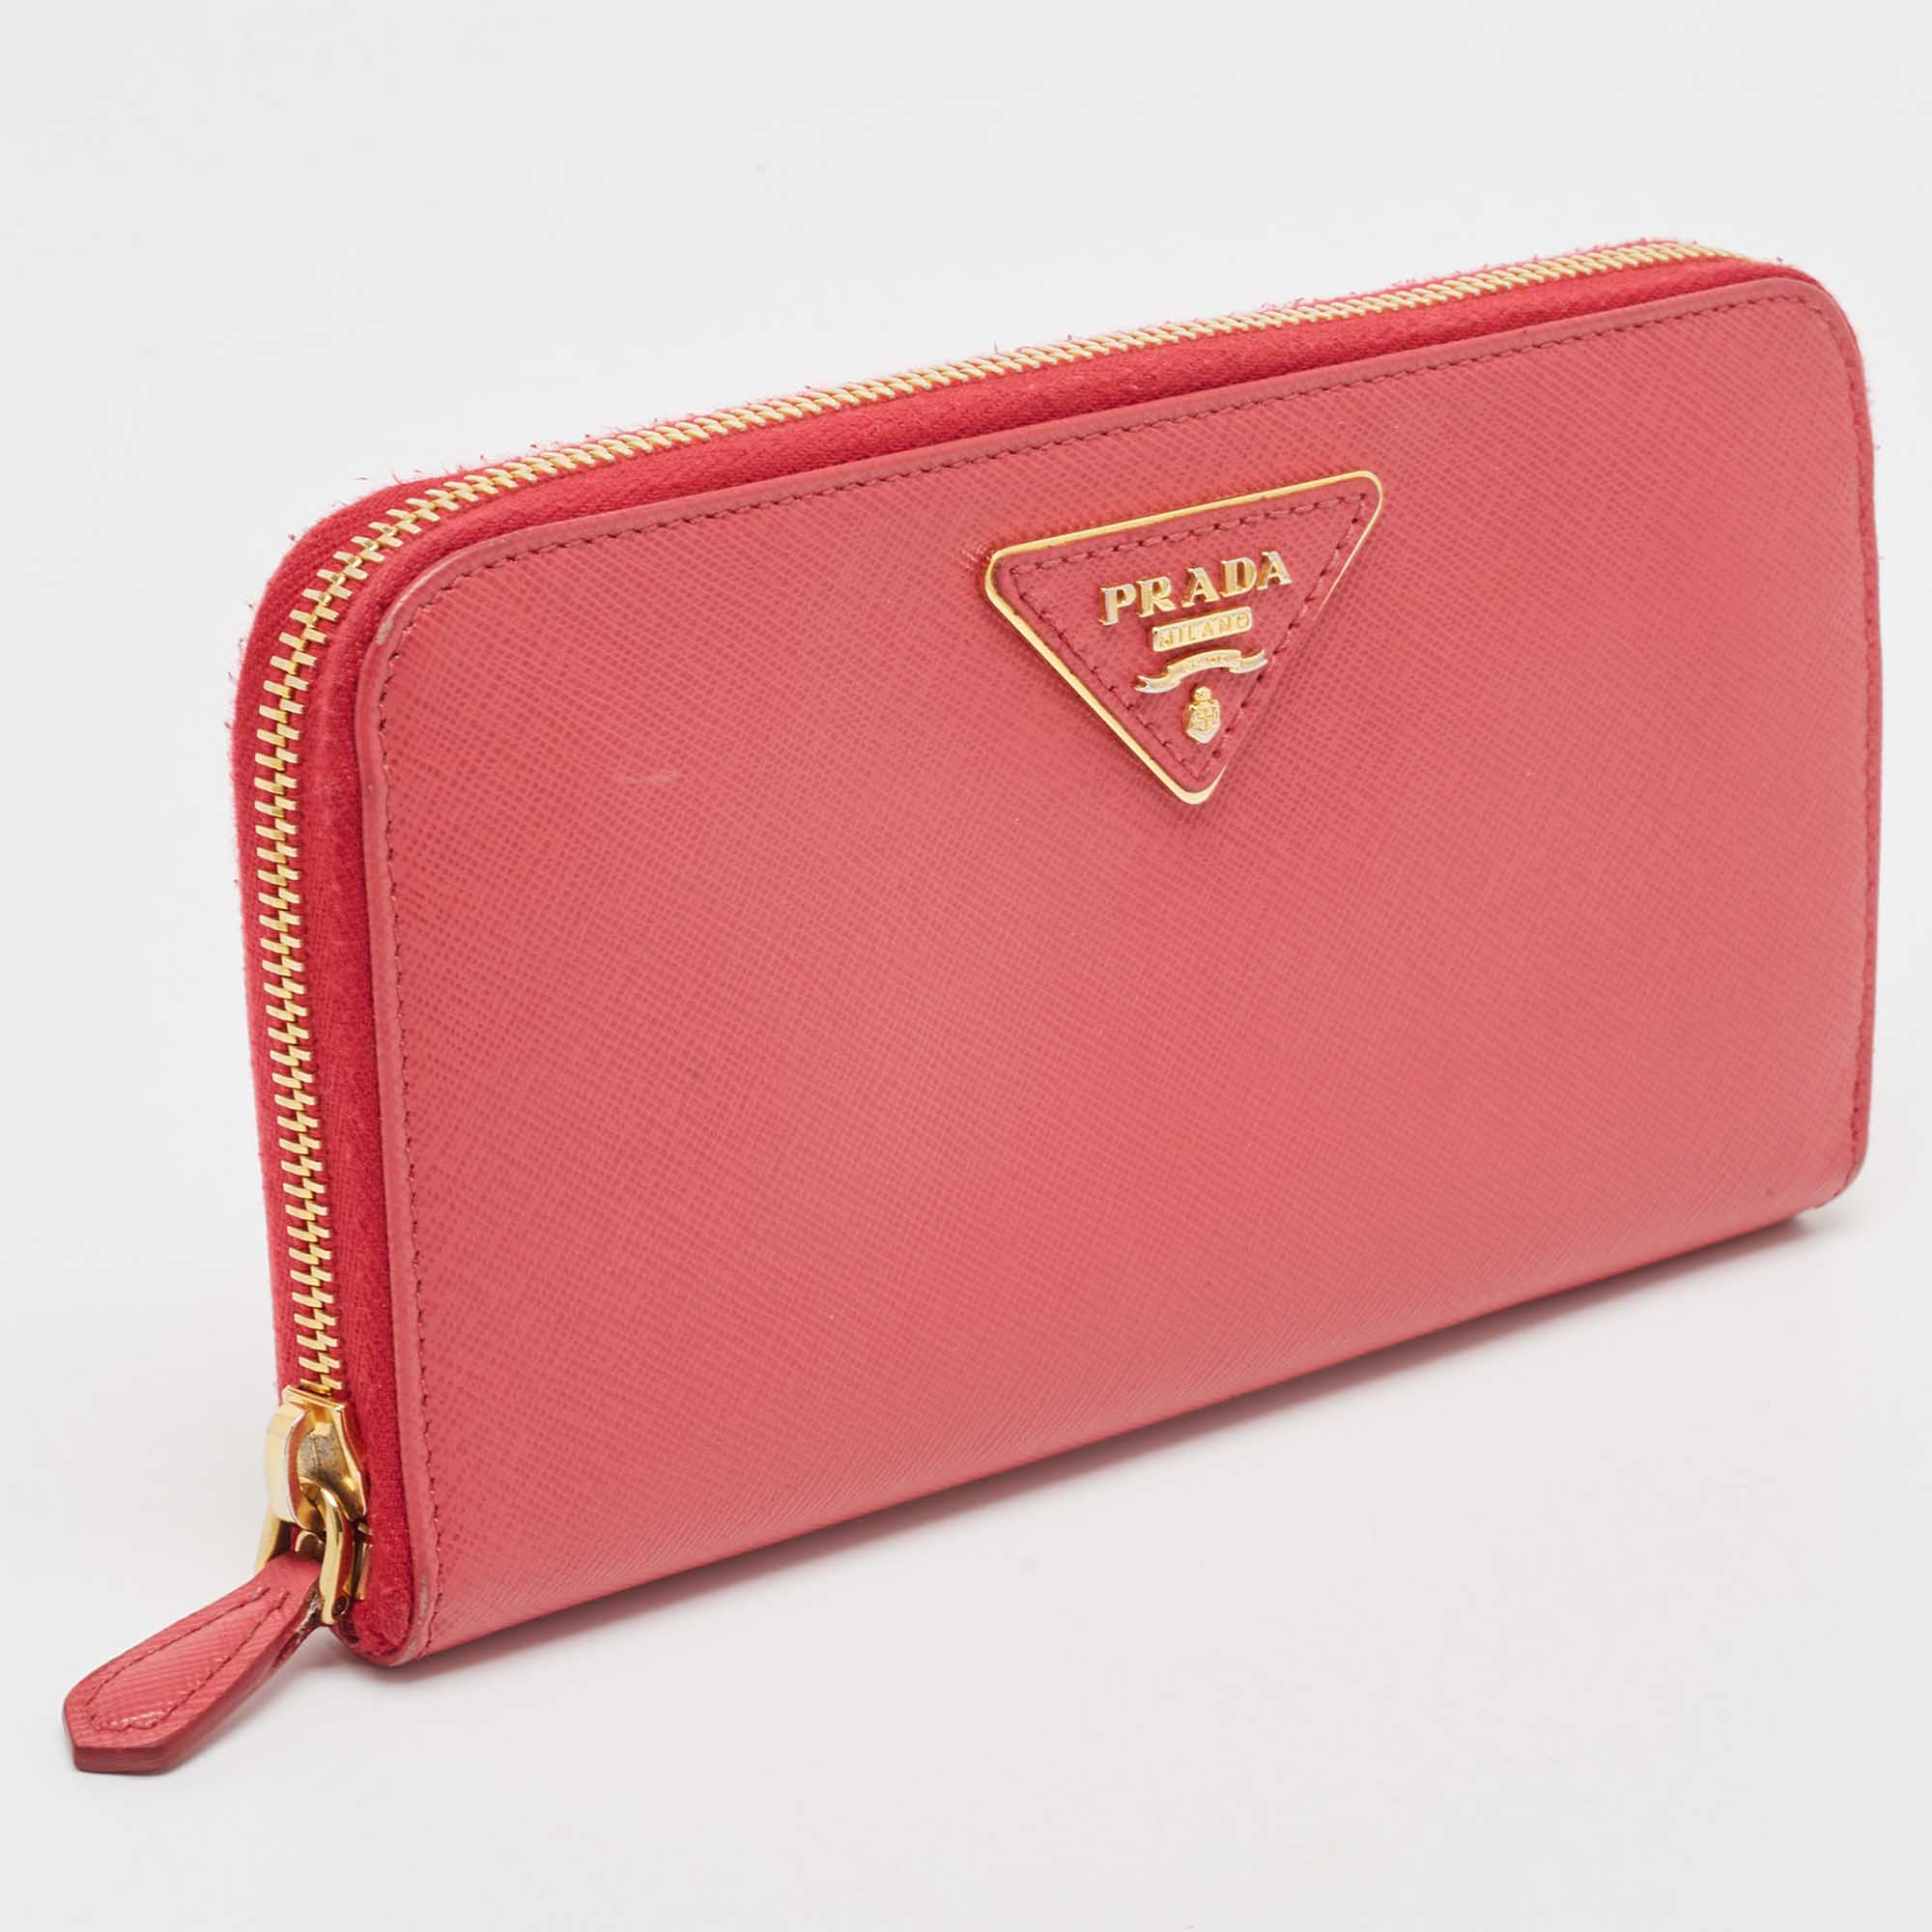 

Prada Pink Saffiano Leather Zip Around Wallet